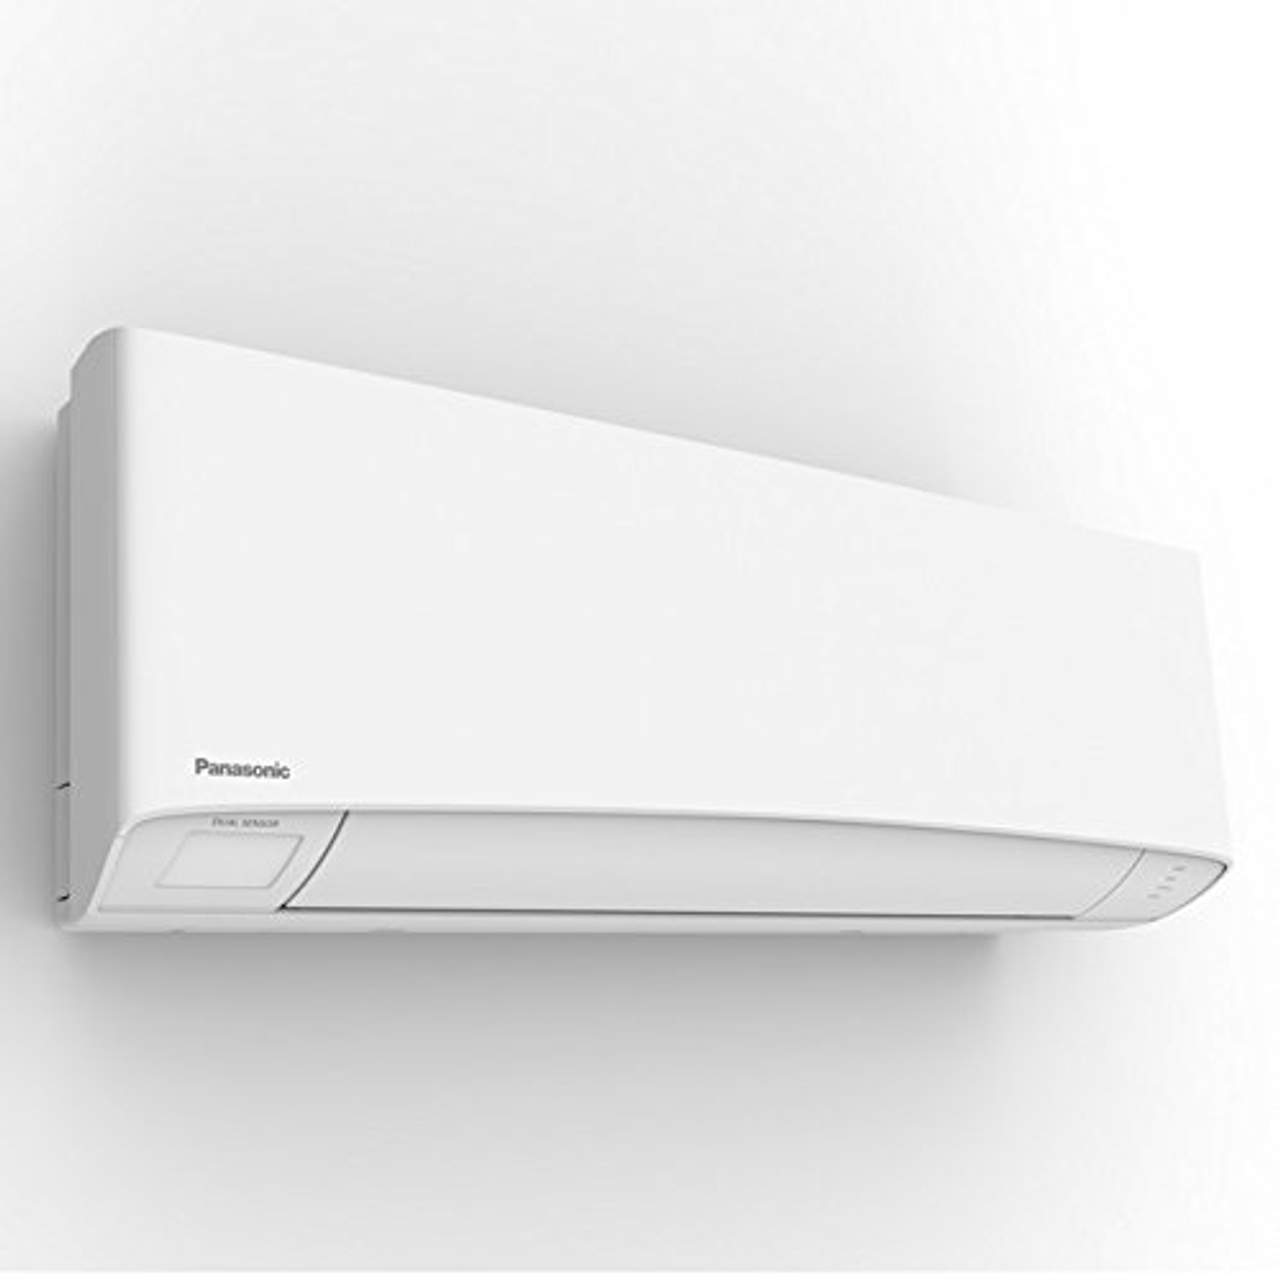 Klima DUO Split raumklimagerät R32 Panasonic WiFi Klimaanlage 1,6+3,5